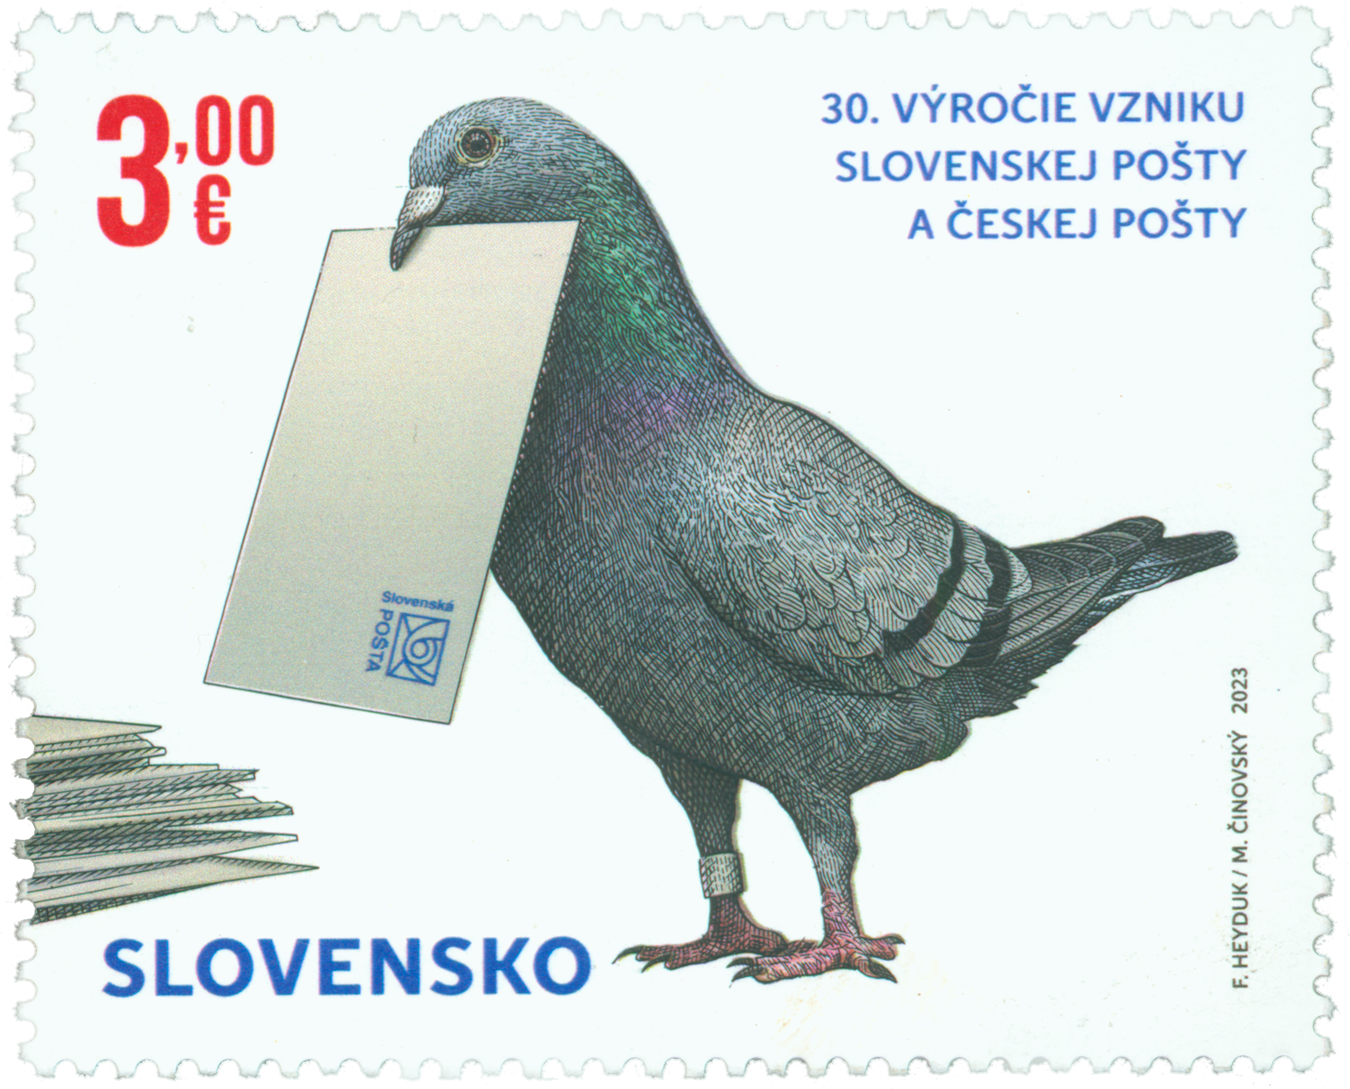 803 - Spoločné vydanie s Českou republikou: 30. výročie vzniku Českej pošty a Slovenskej pošty